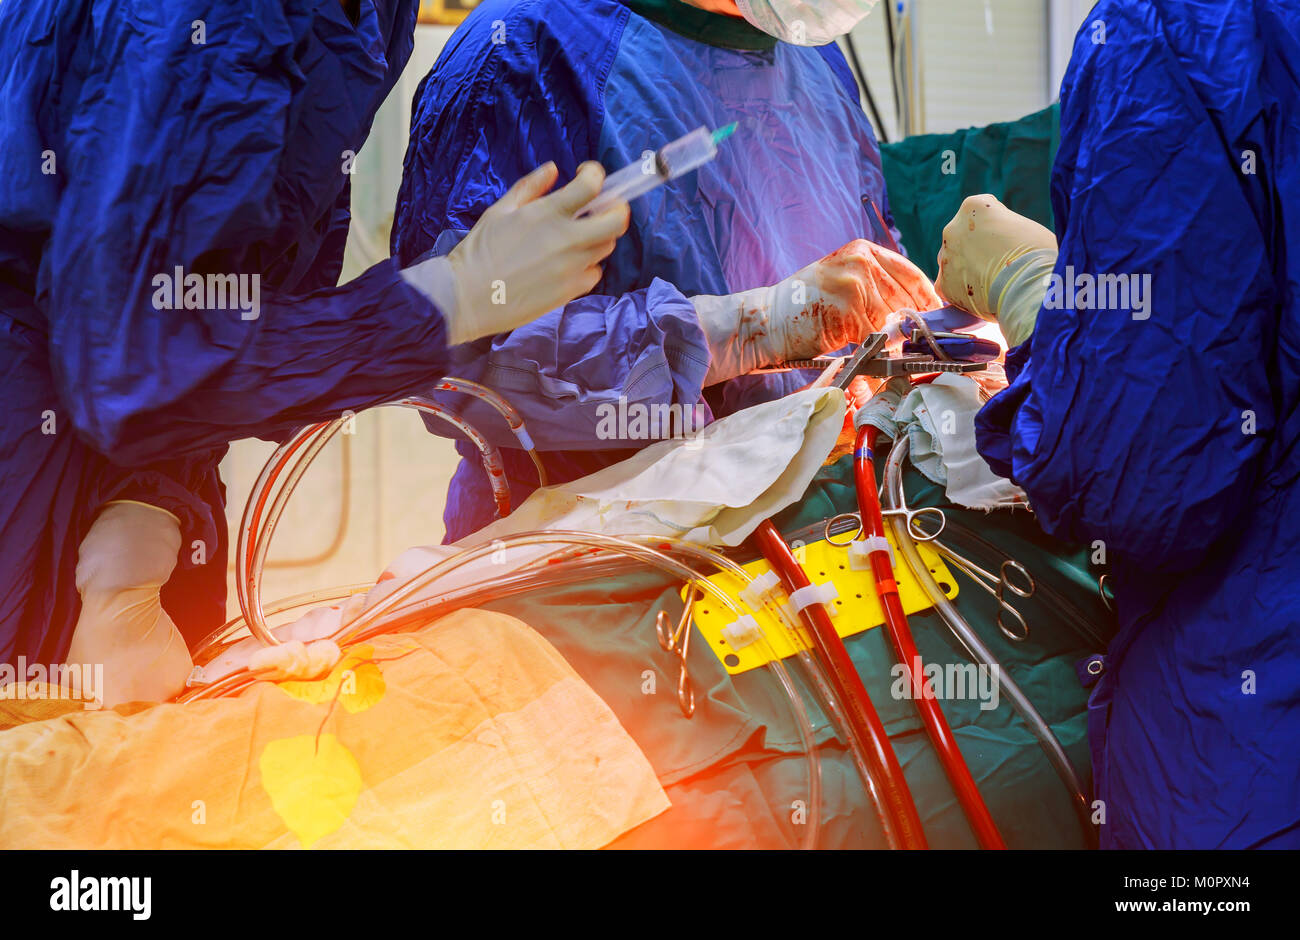 Les mains sont chirurgien faisant un nœud au cours de la procédure à coeur ouvert poitrine en chirurgie cardiaque Banque D'Images